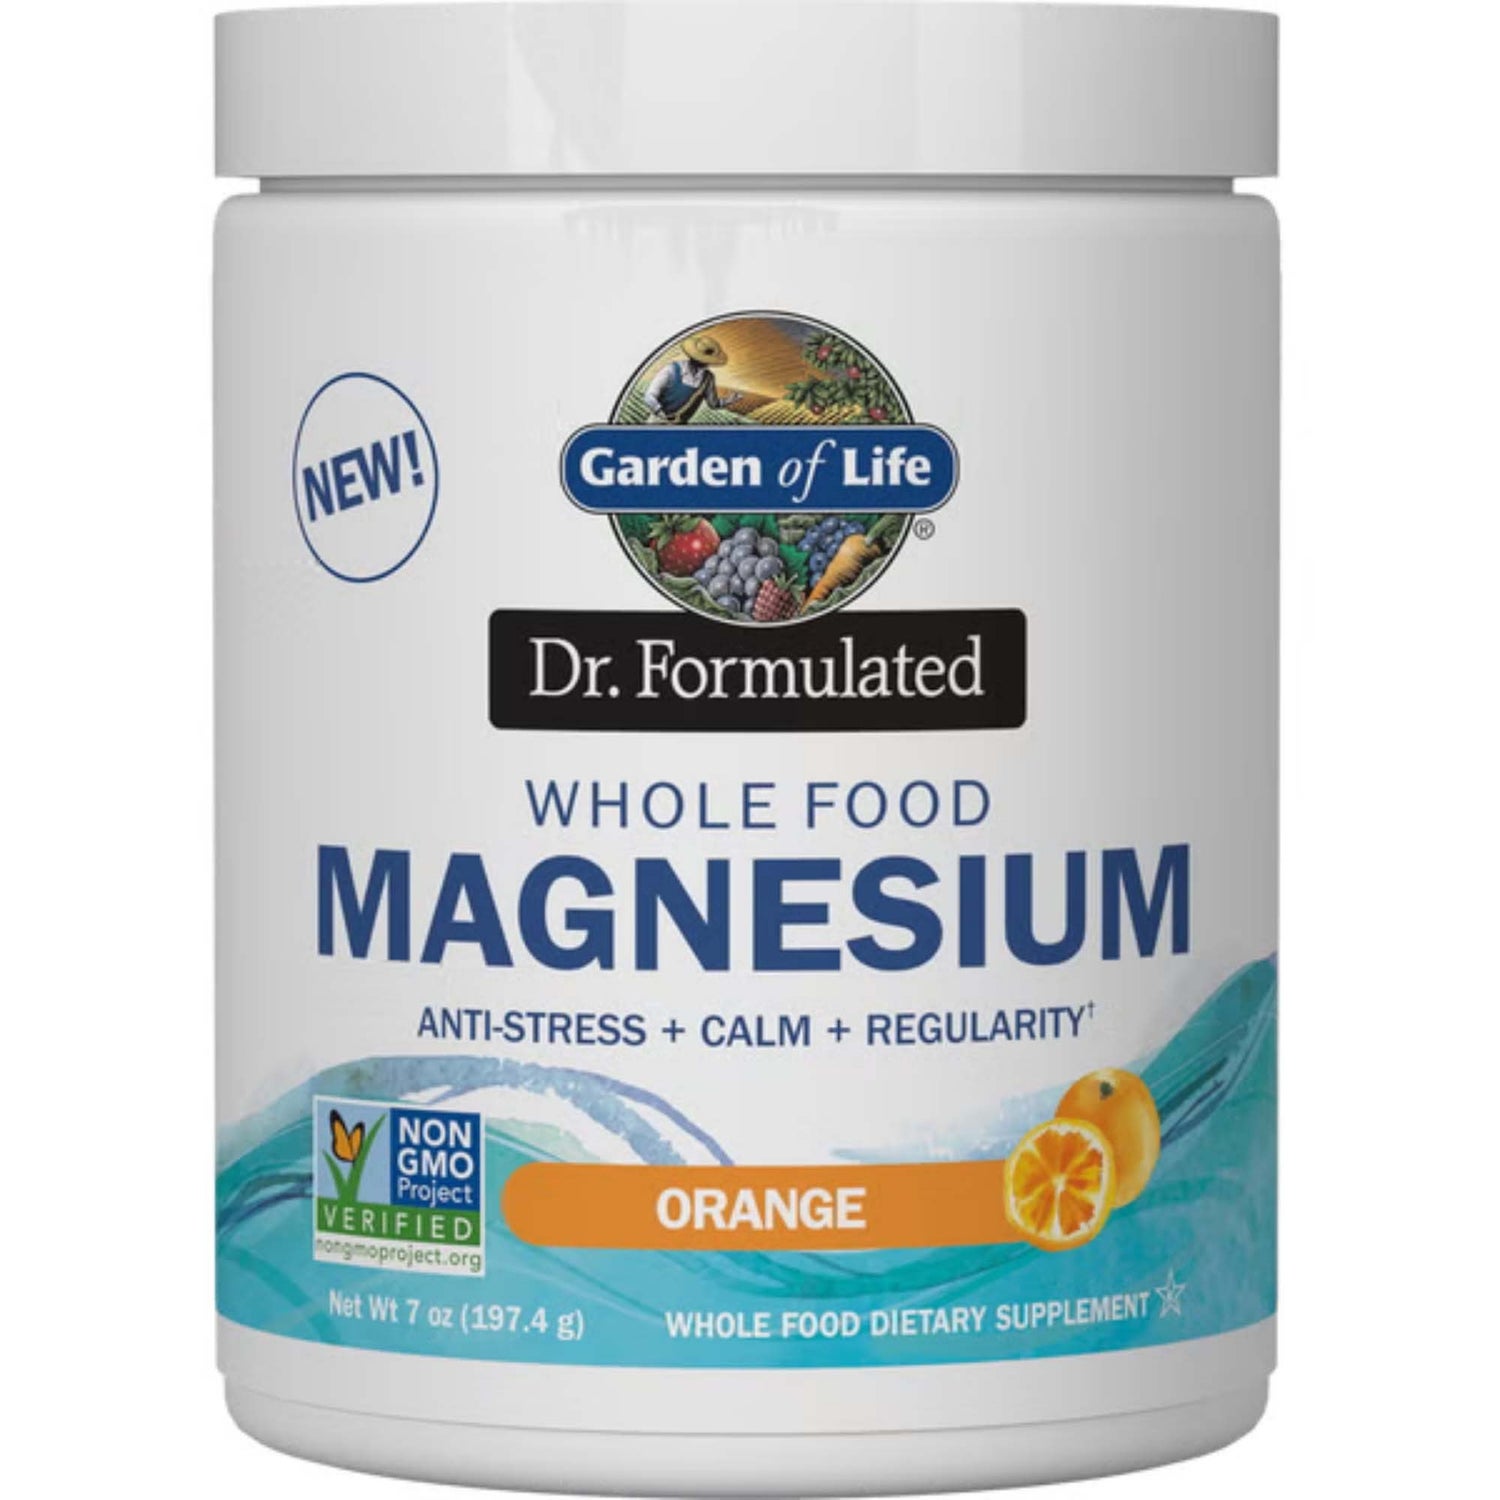 Whole Food Magnésium - Orange - 197.4g